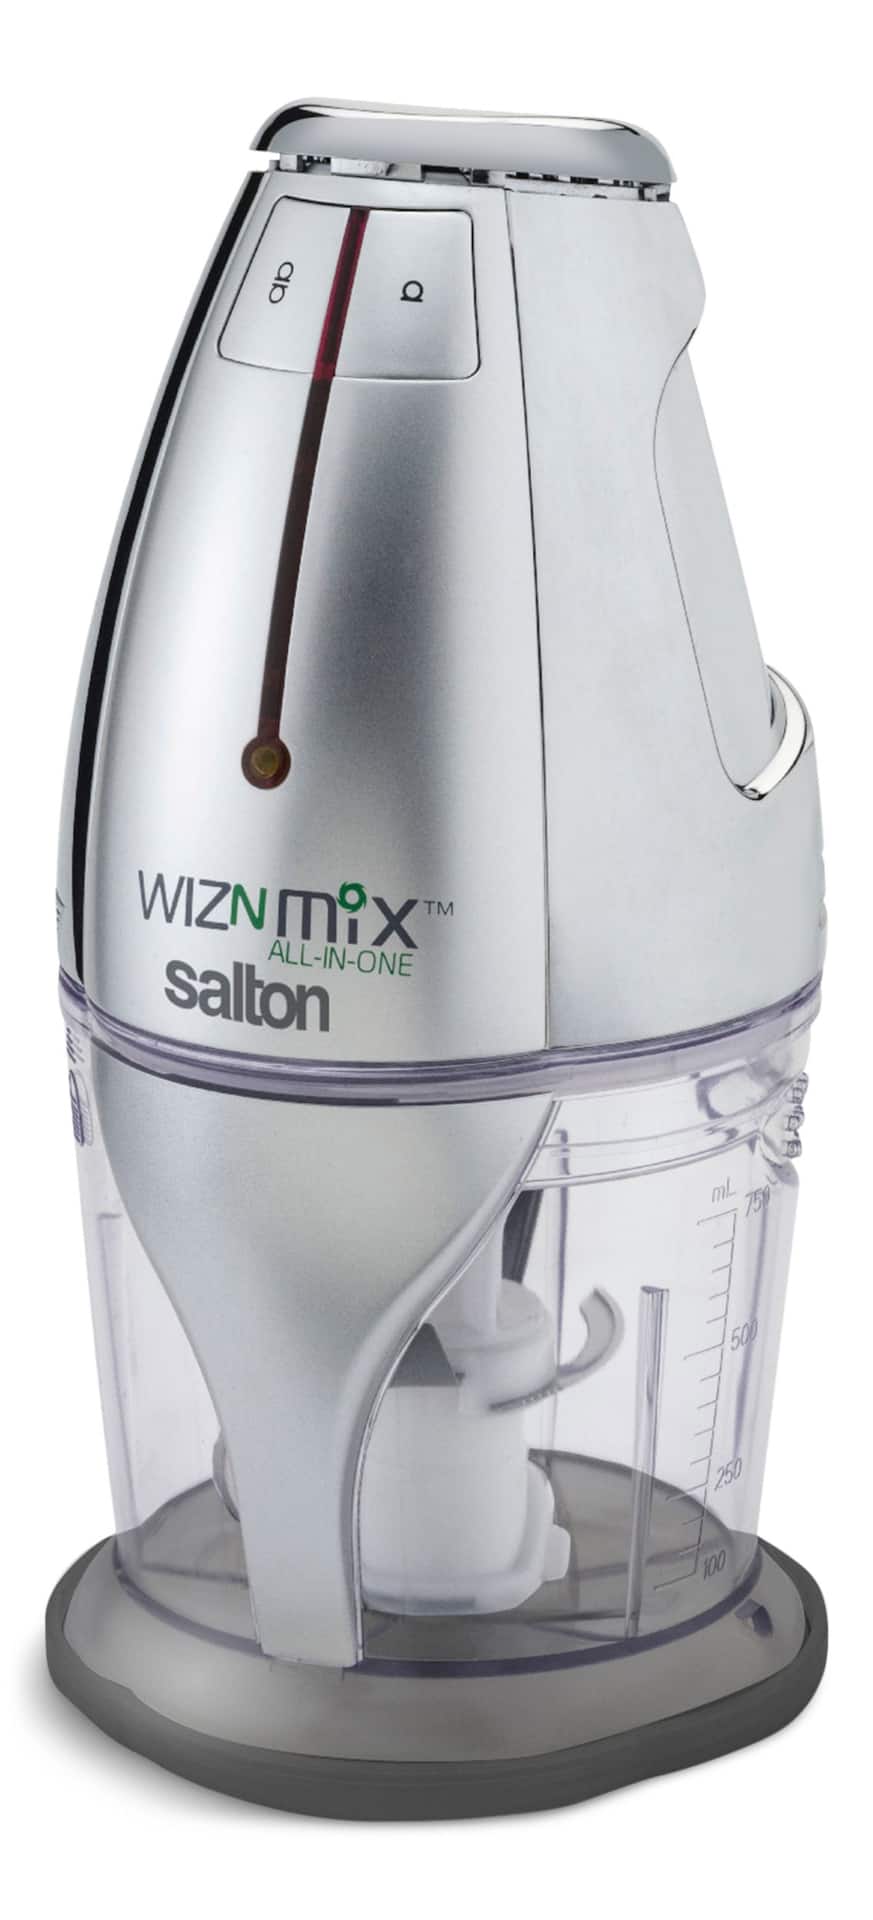 Robot culinaire, hacheur et mélangeur tout en un, WizNMix par Salton